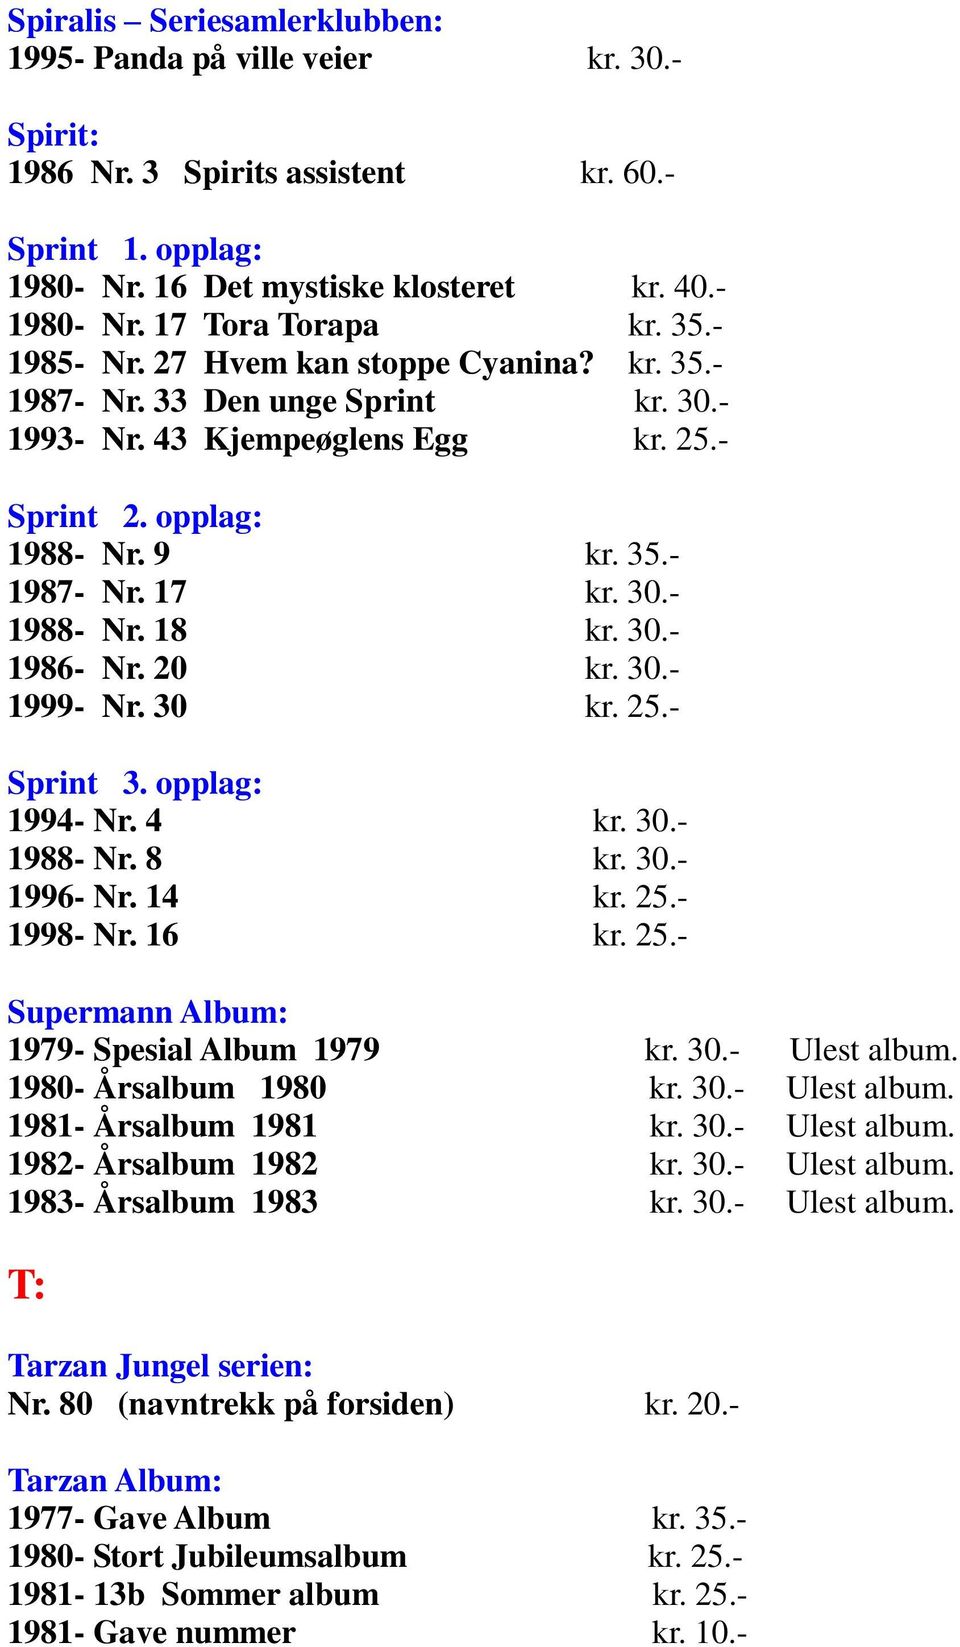 30.- 1988- Nr. 18 kr. 30.- 1986- Nr. 20 kr. 30.- 1999- Nr. 30 kr. 25.- Sprint 3. opplag: 1994- Nr. 4 kr. 30.- 1988- Nr. 8 kr. 30.- 1996- Nr. 14 kr. 25.- 1998- Nr. 16 kr. 25.- Supermann Album: 1979- Spesial Album 1979 kr.